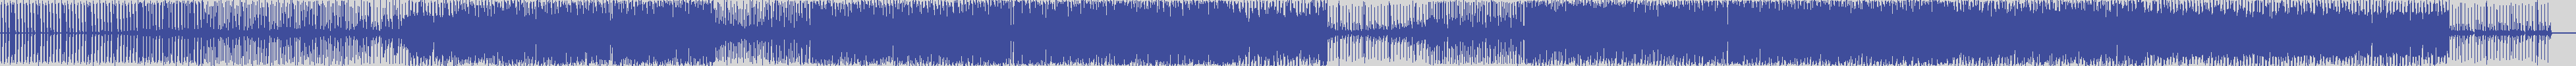 suxess [SX029] Magnvm! - Bat [Original Mix] audio wave form